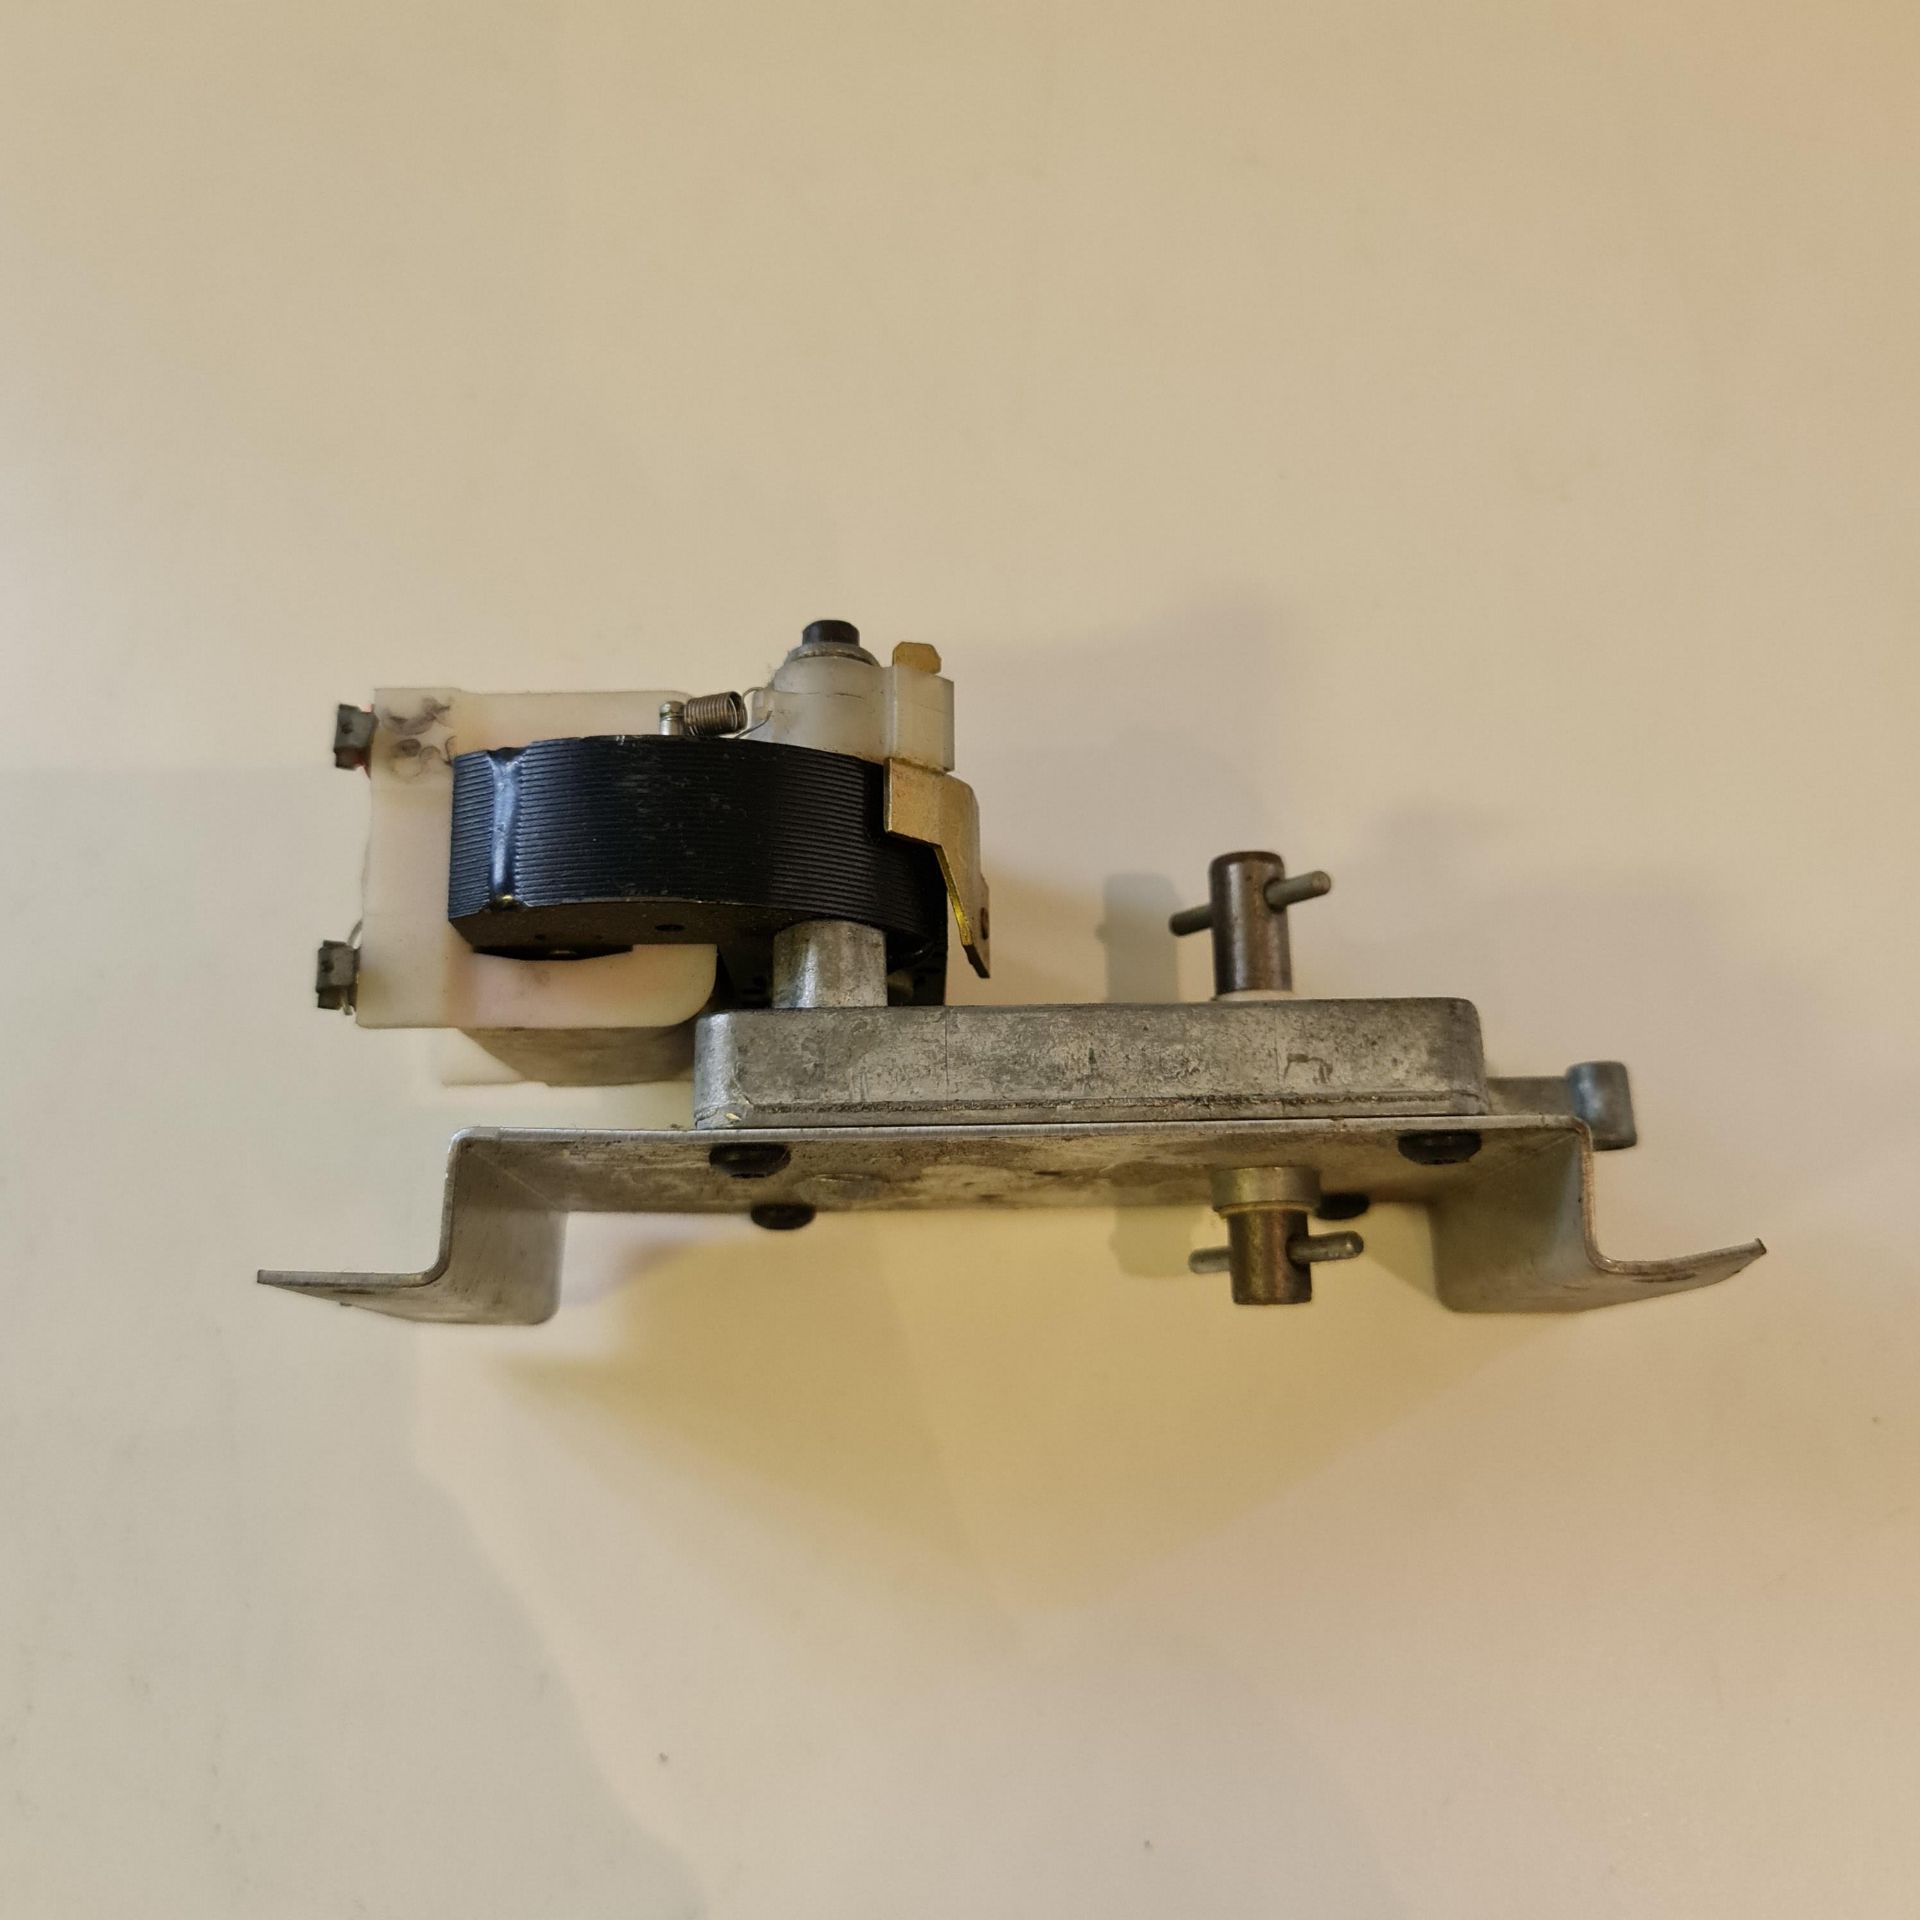 Merkle Korff Vending Machine Gear Motor P/N 388637 Second Hand RRP £100 - Image 2 of 6